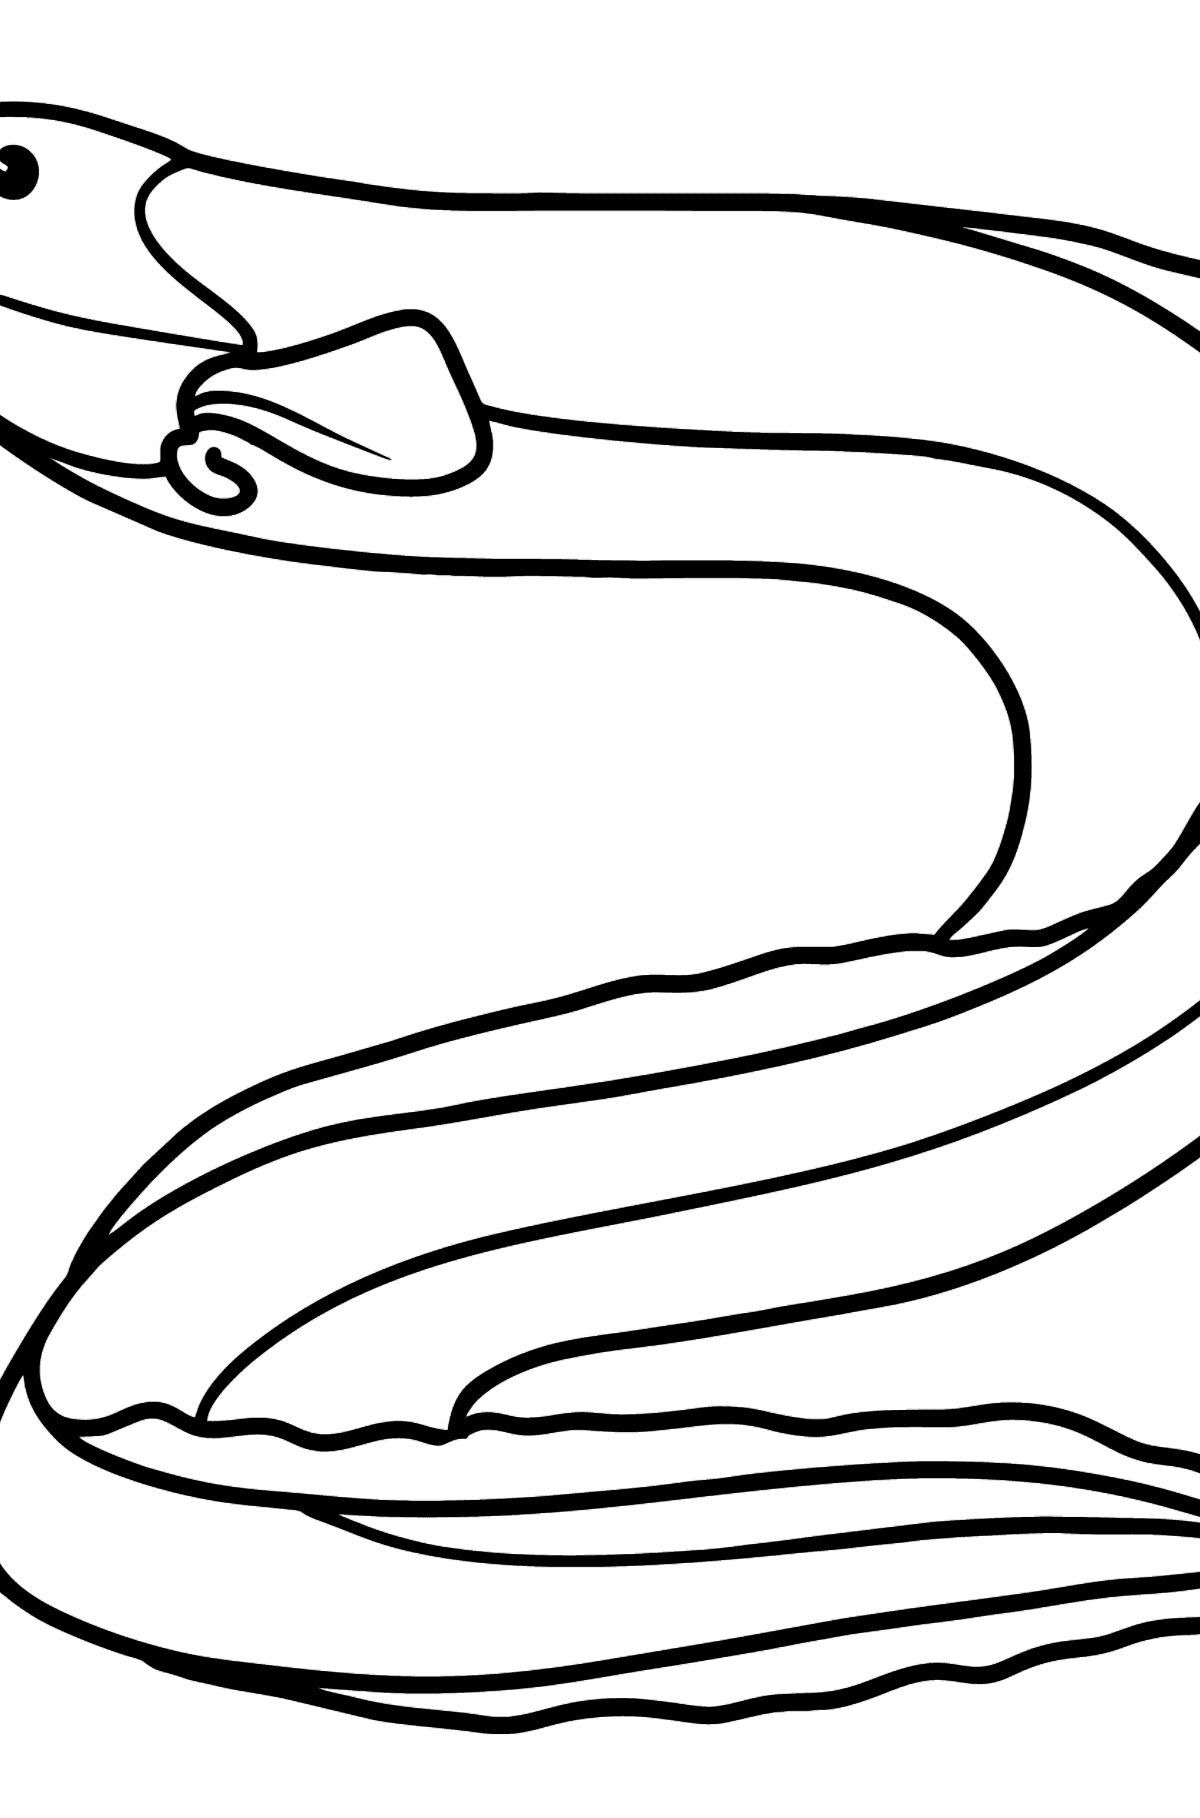 Dibujo de anguila para colorear - Dibujos para Colorear para Niños